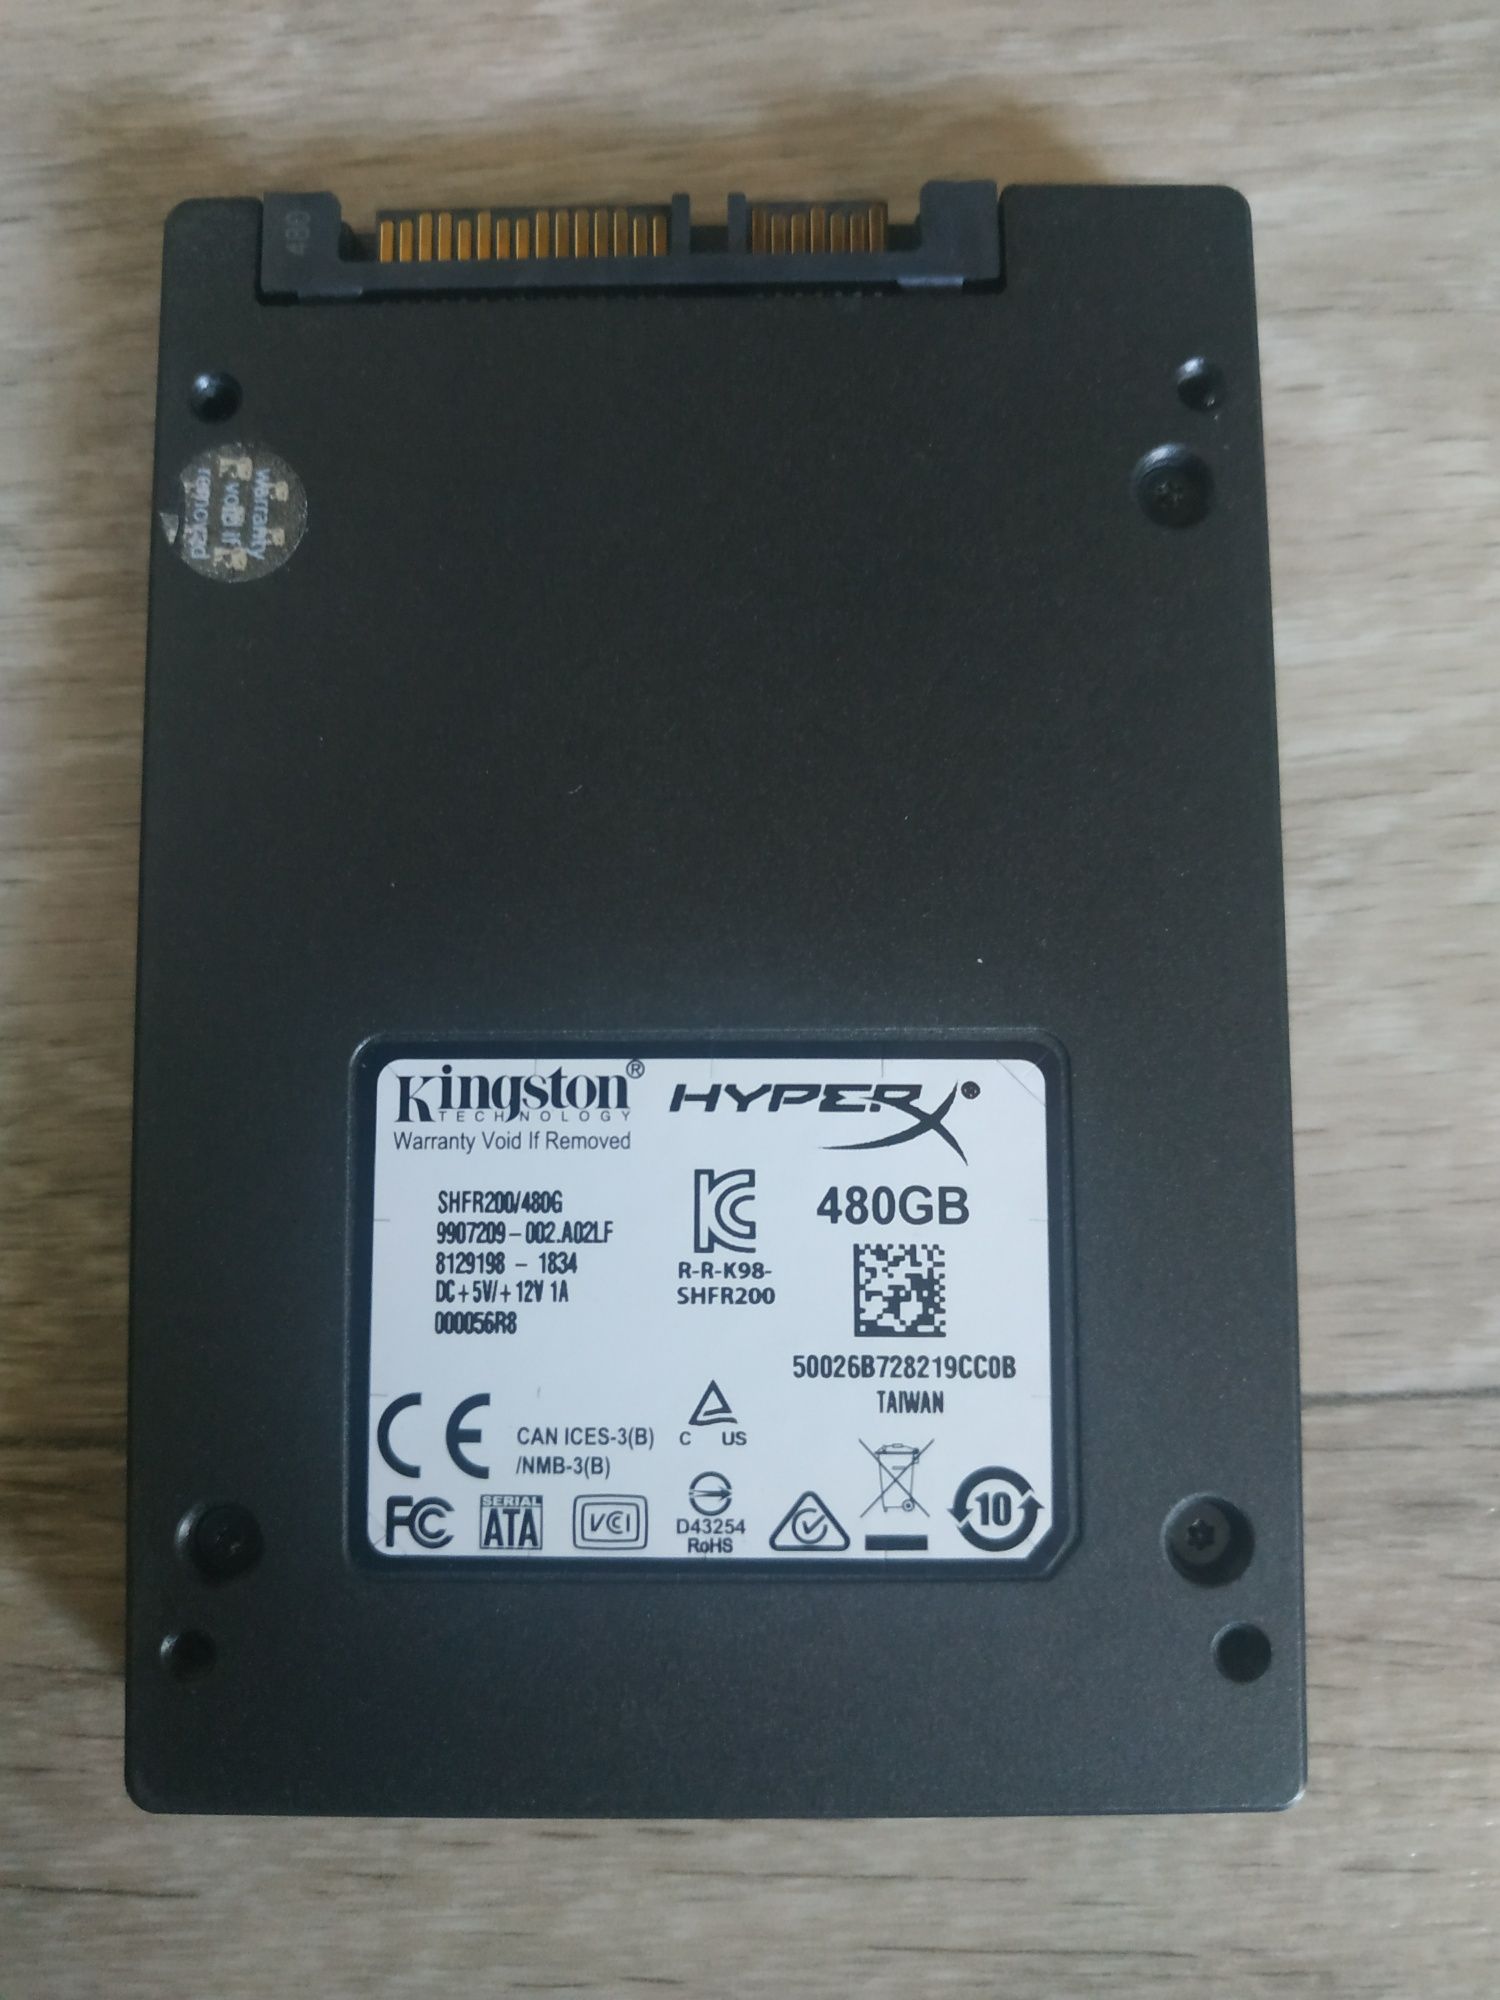 SSD Kingston Hyper X 480Gb Sata